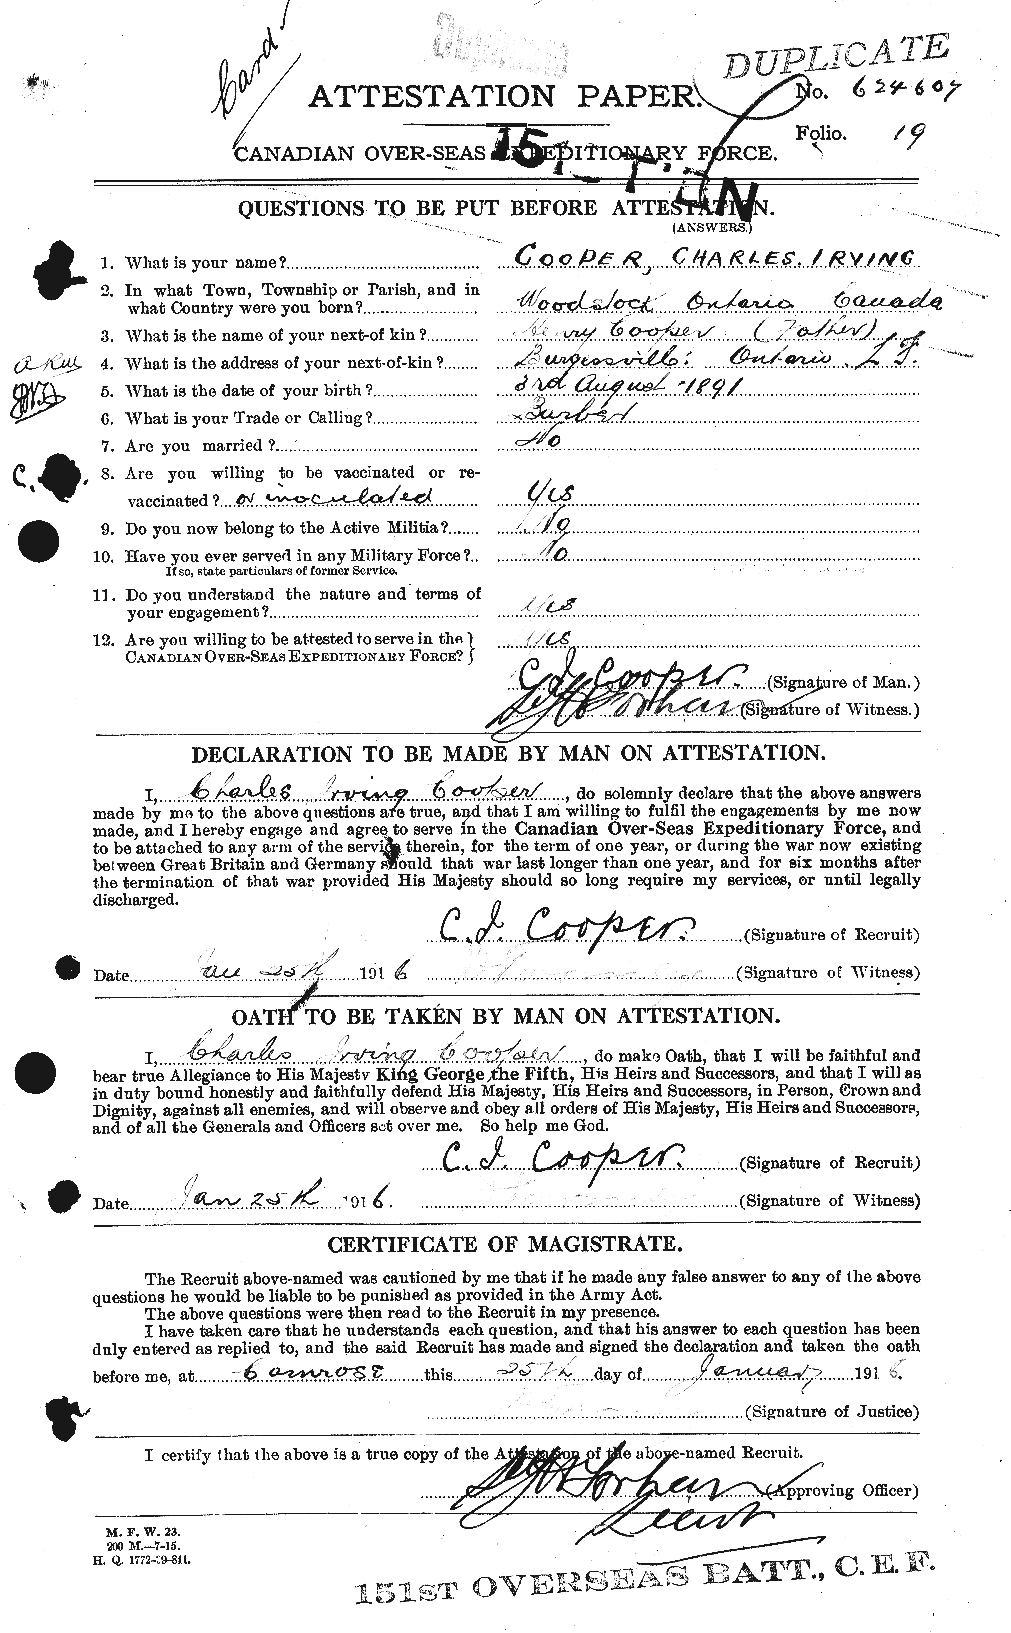 Dossiers du Personnel de la Première Guerre mondiale - CEC 054244a